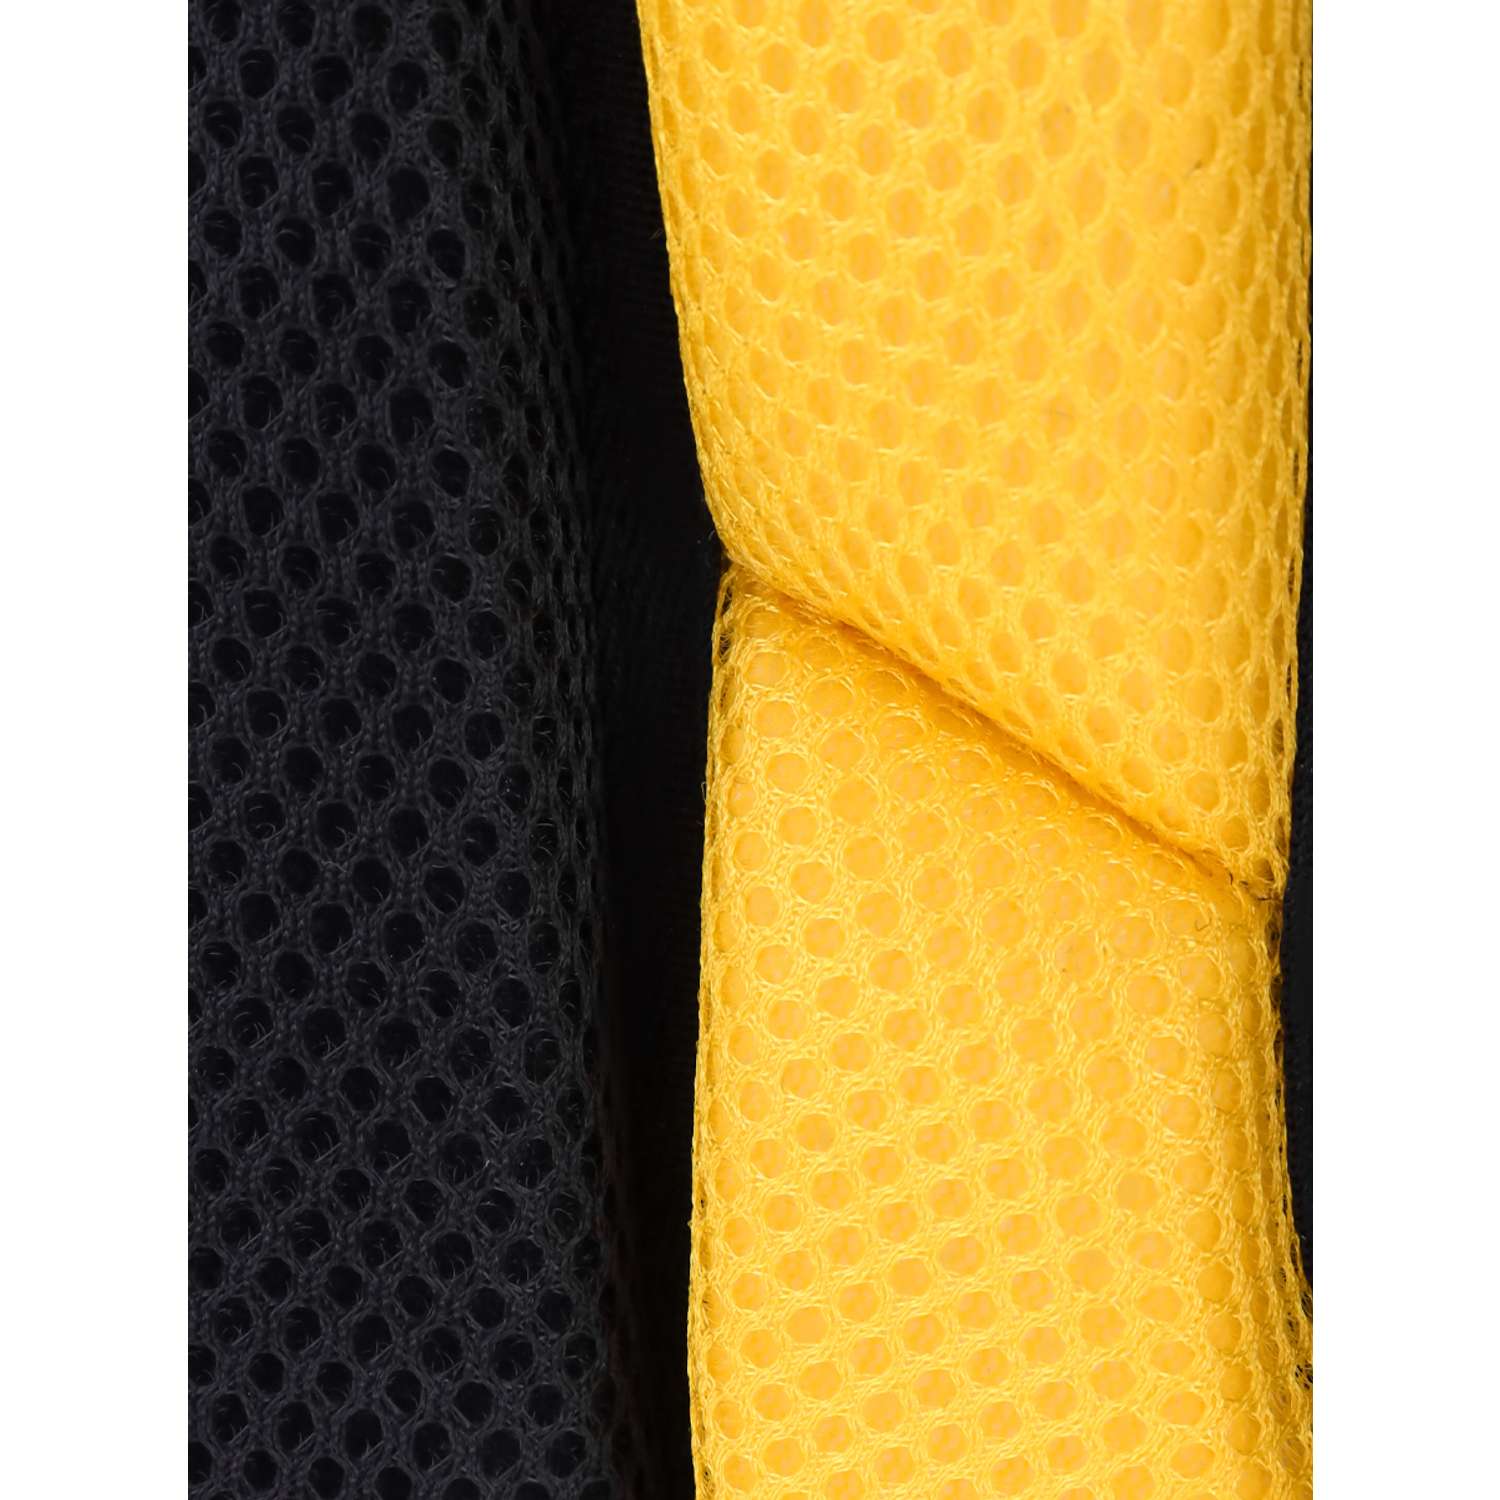 Школьный формованный ранец Проф-Пресс Паркур цвет желтый размер 38х23х20 см - фото 11